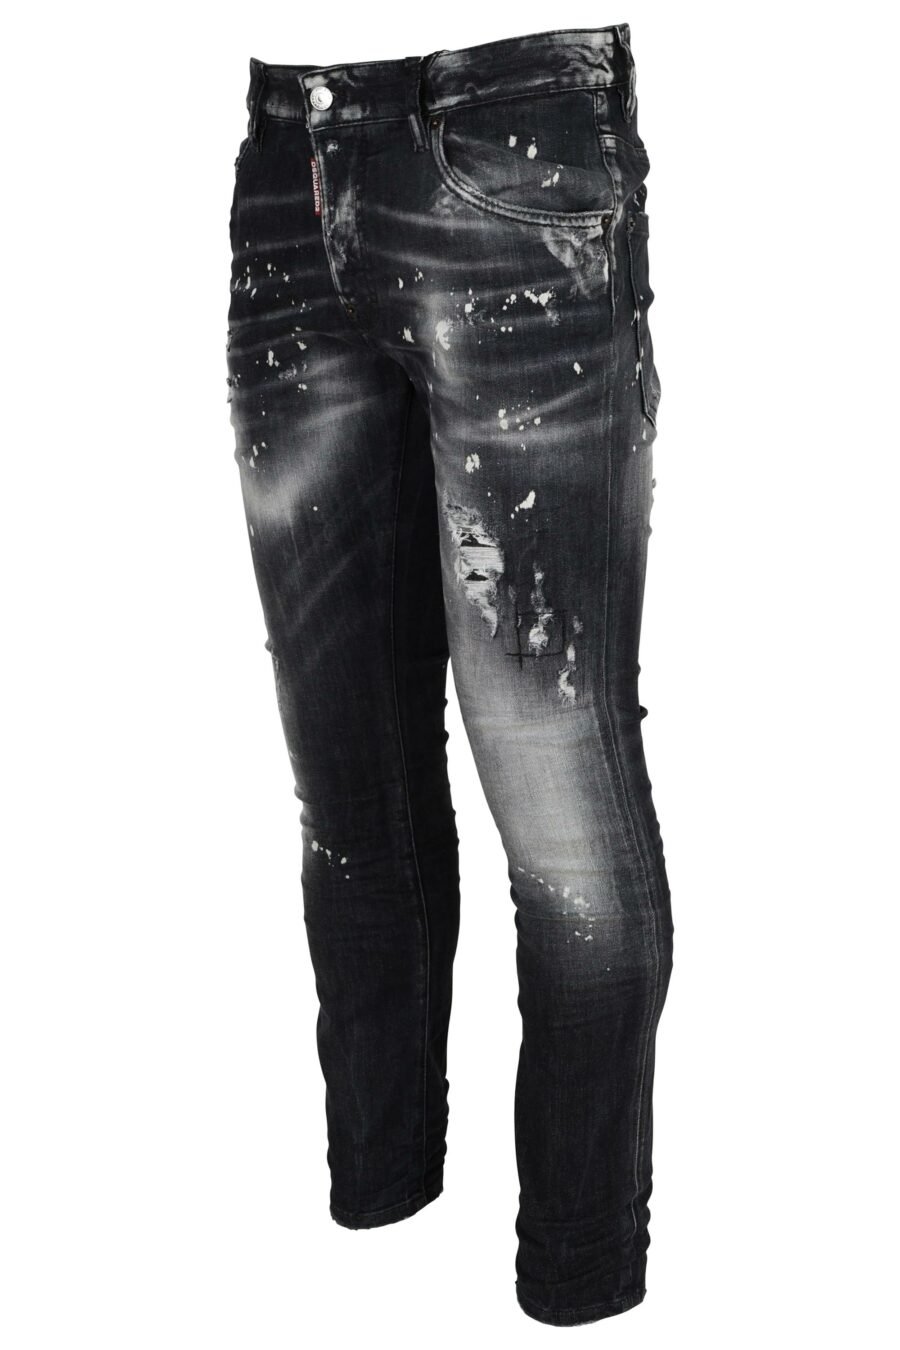 Pantalón vaquero negro "super twinky jean" con rotos y semidesgastado - 8054148473945 1